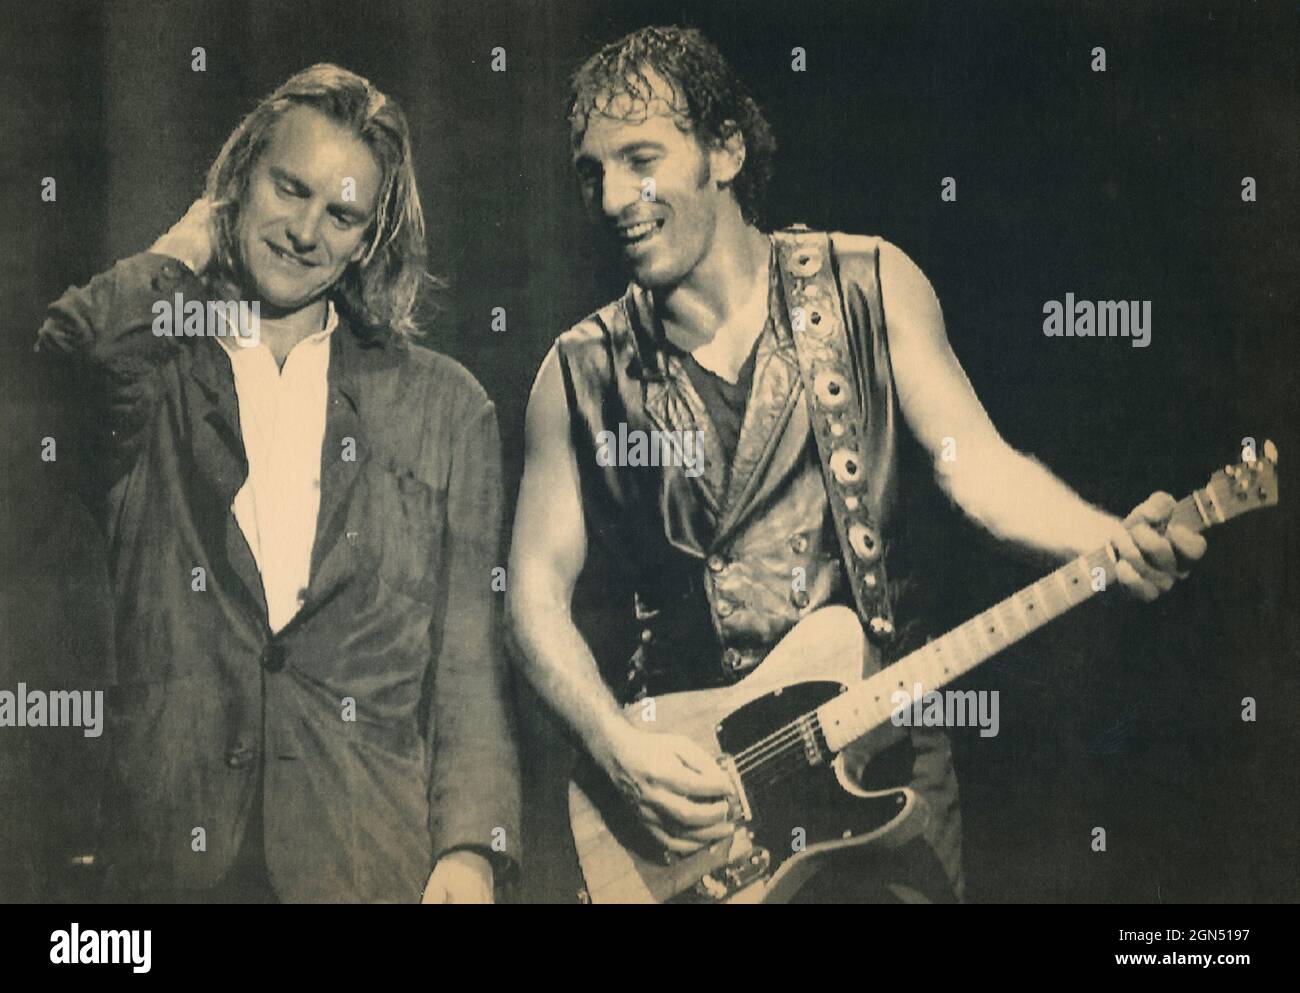 Le musicien anglais Sting et le musicien américain Bruce Springsteen à un concert, 1989 Banque D'Images